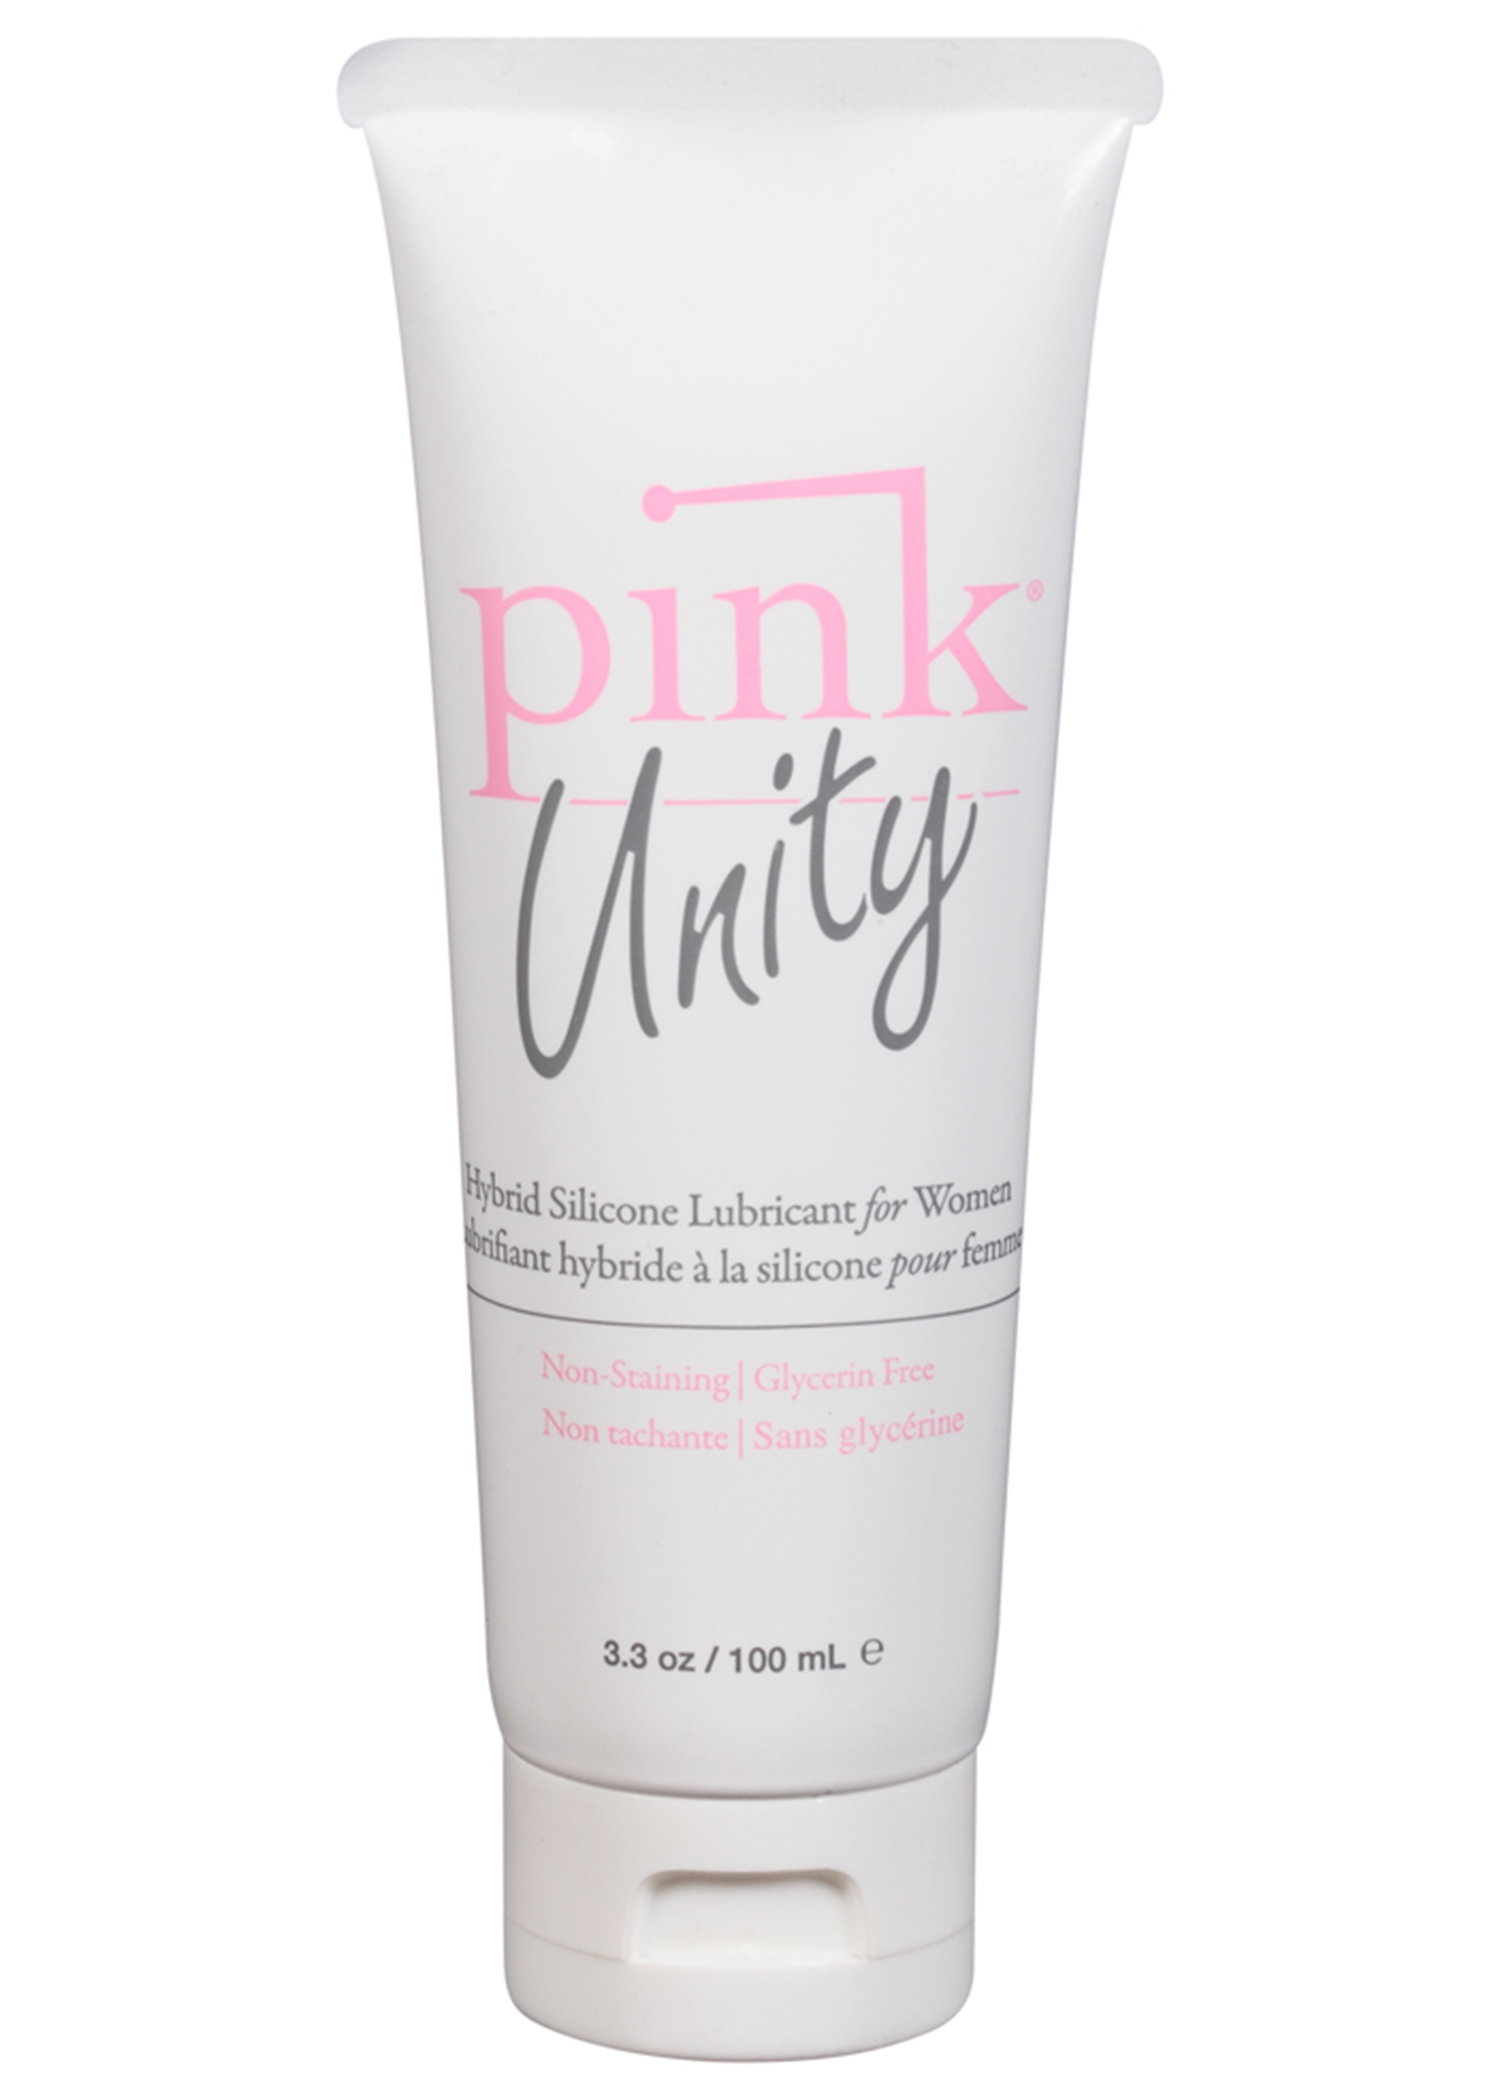 pink unity  oz tube 